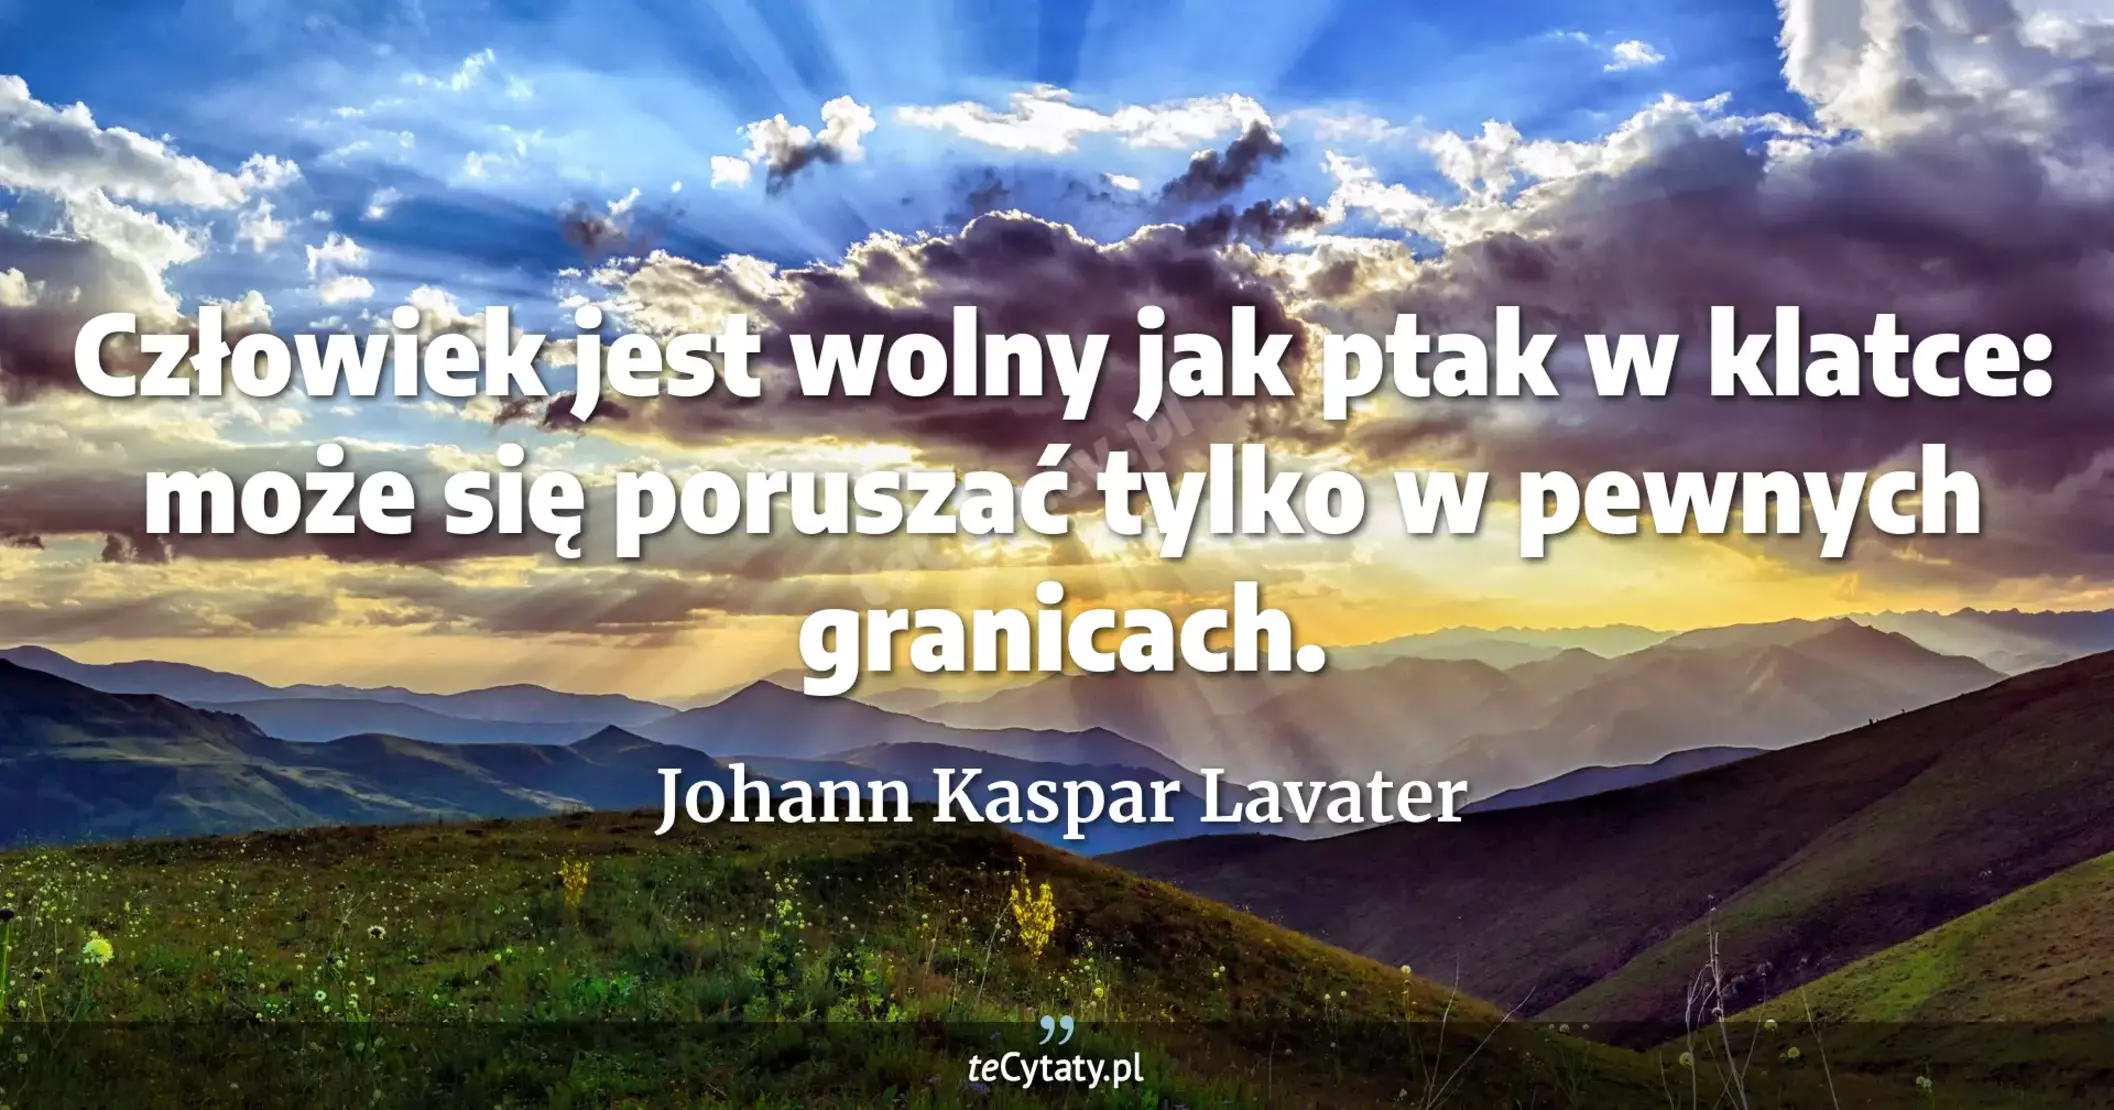 Człowiek jest wolny jak ptak w klatce: może się poruszać tylko w pewnych granicach. - Johann Kaspar Lavater